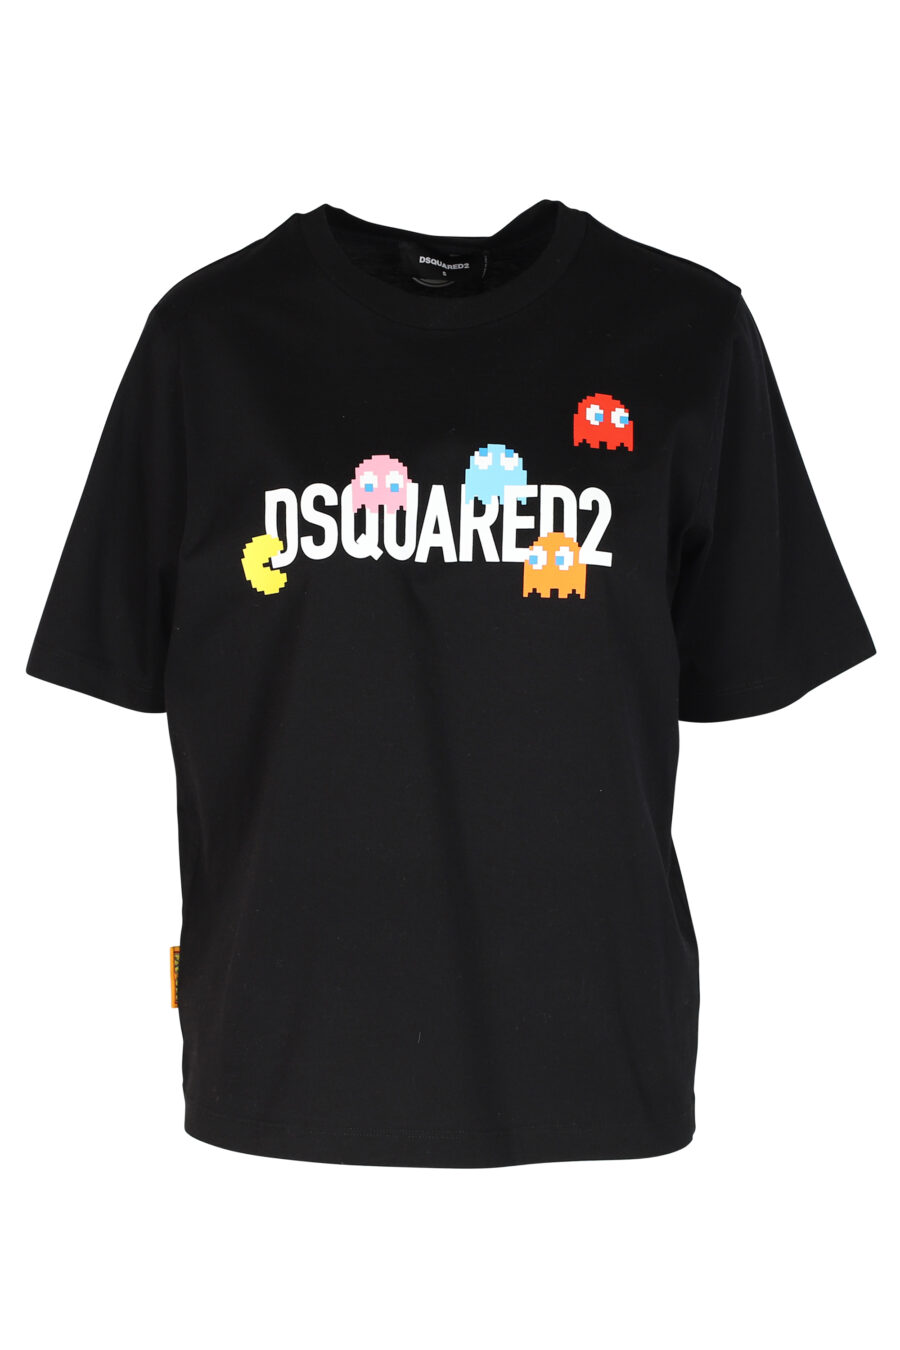 T-shirt noir avec logo "Pac-man" - 8054148185558